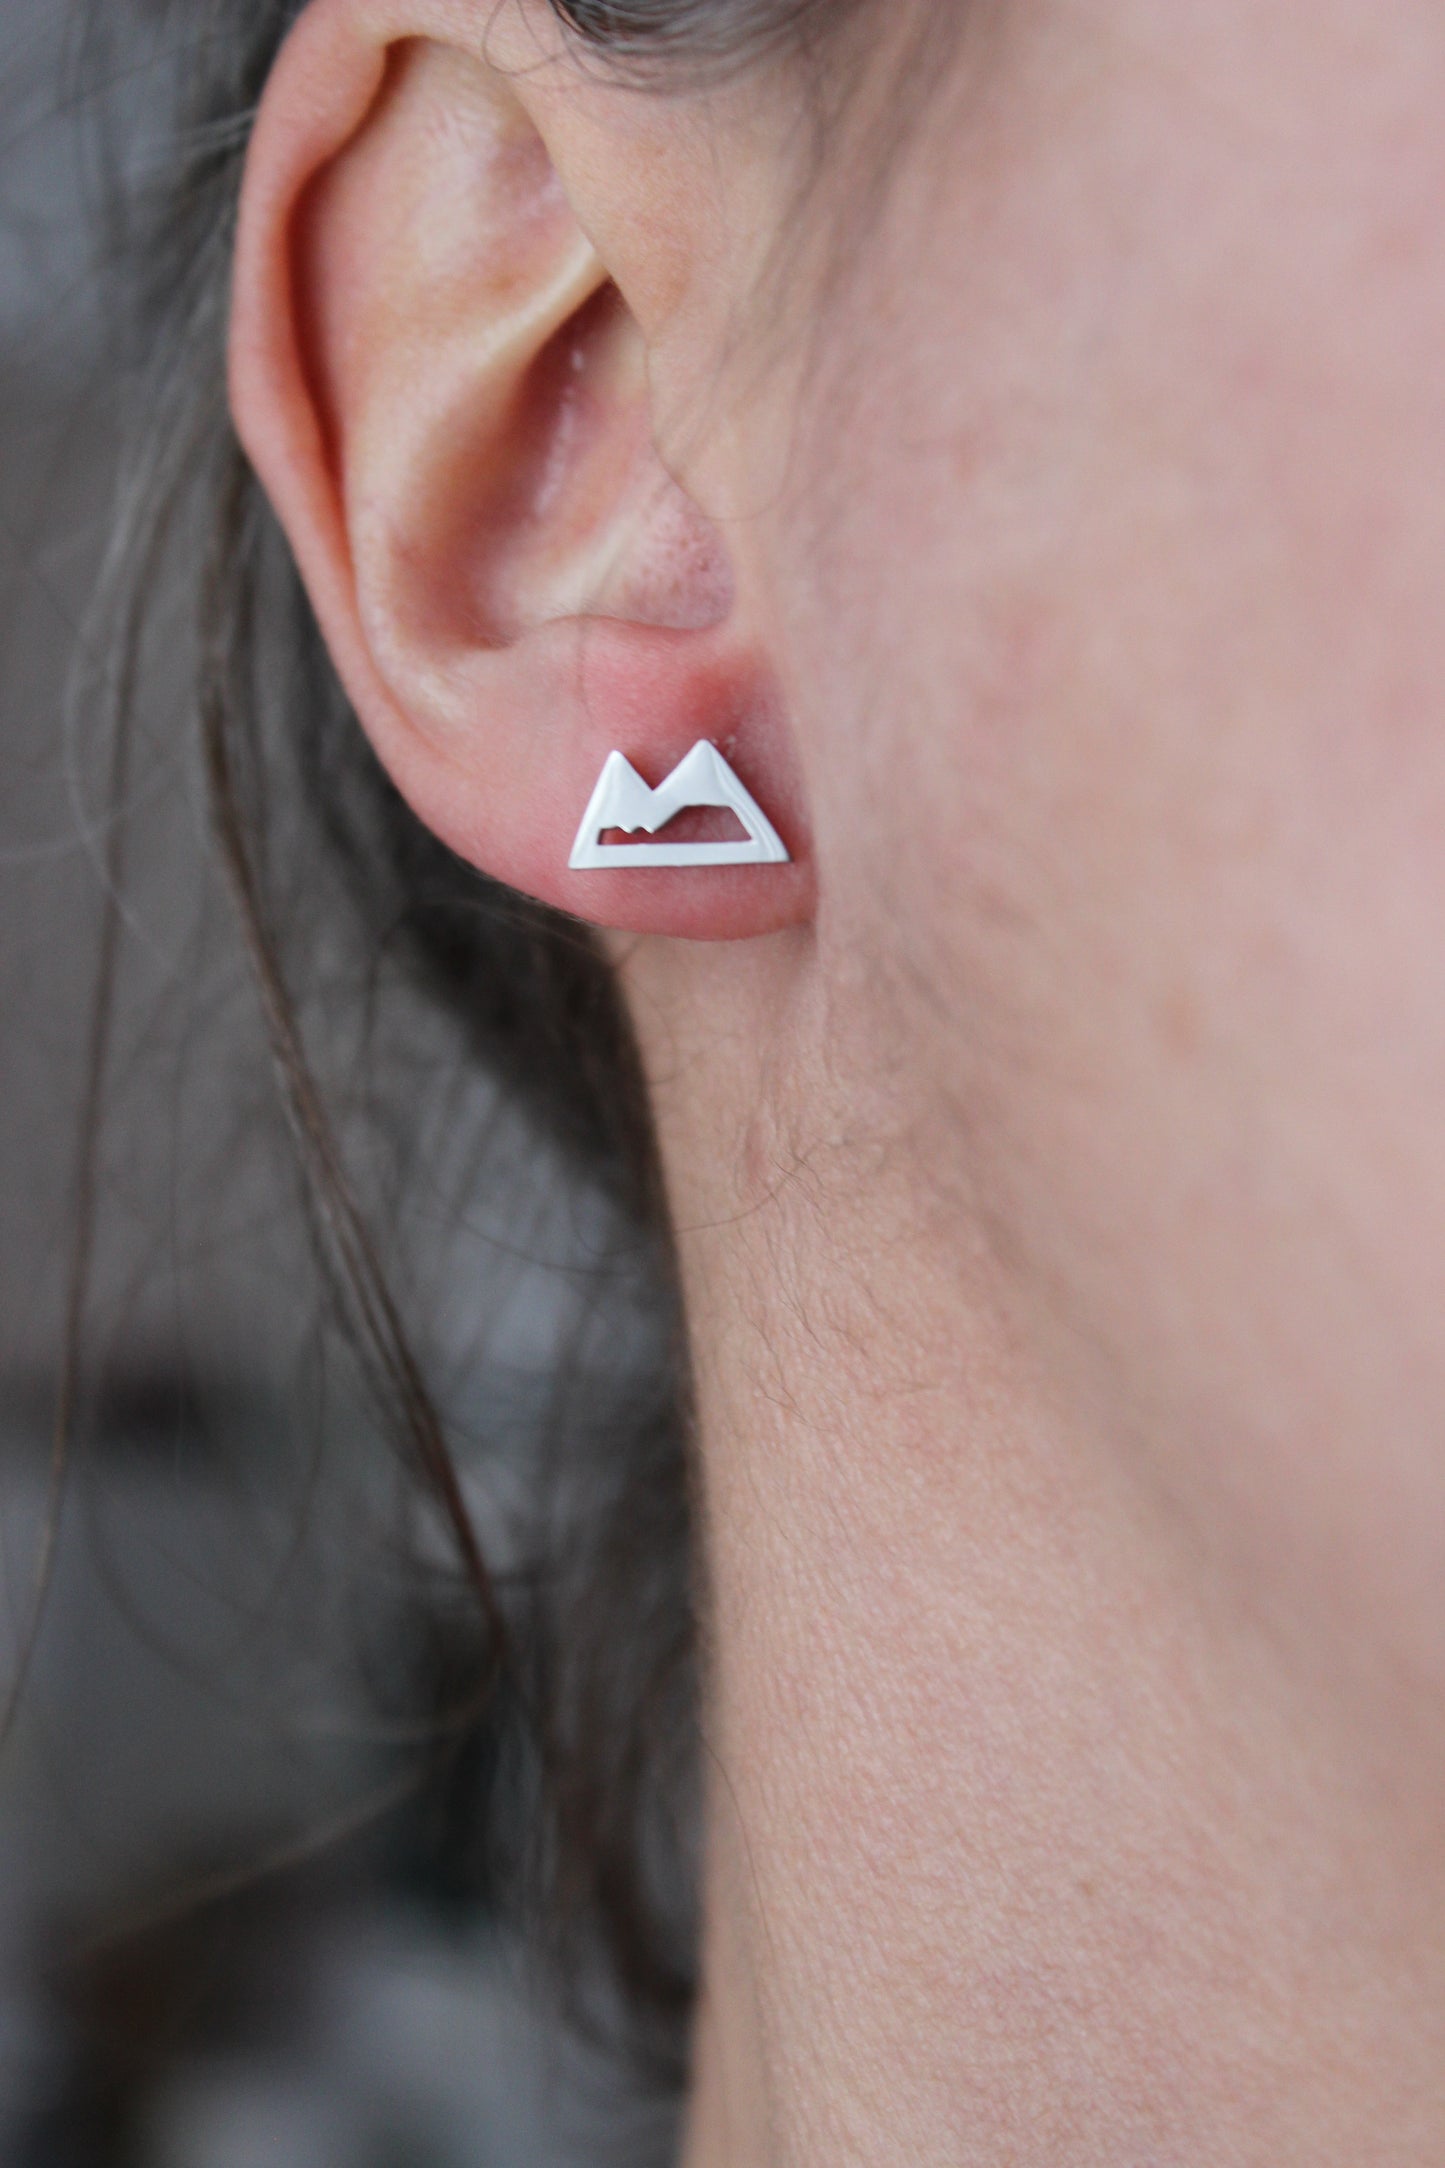 Boucles d'oreilles montagne acier inoxydable // mountain stud earrings // stainless steel earrings // minimalist jewelry // (bo-1700)